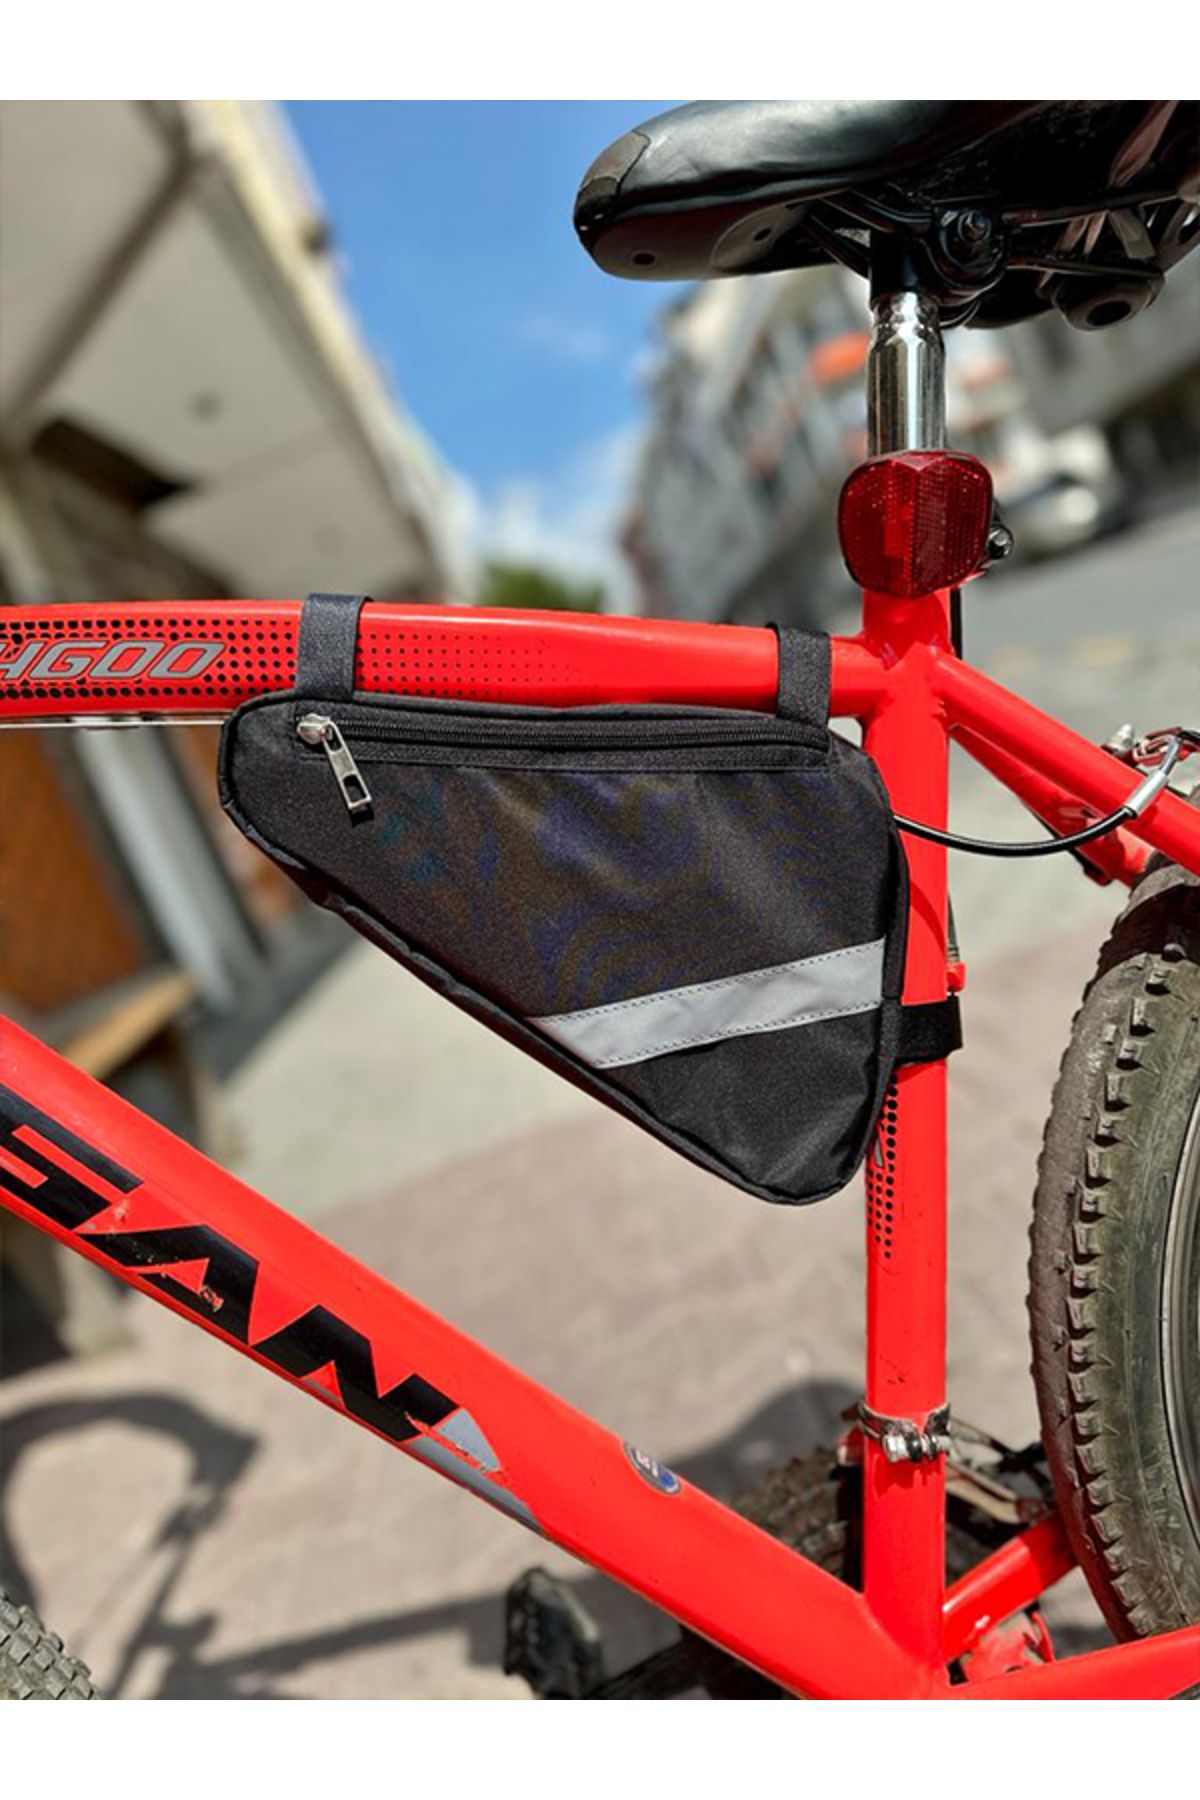 krambler Bisiklet Çantası Reflektörlü Üçgen Kadro Arası Çanta